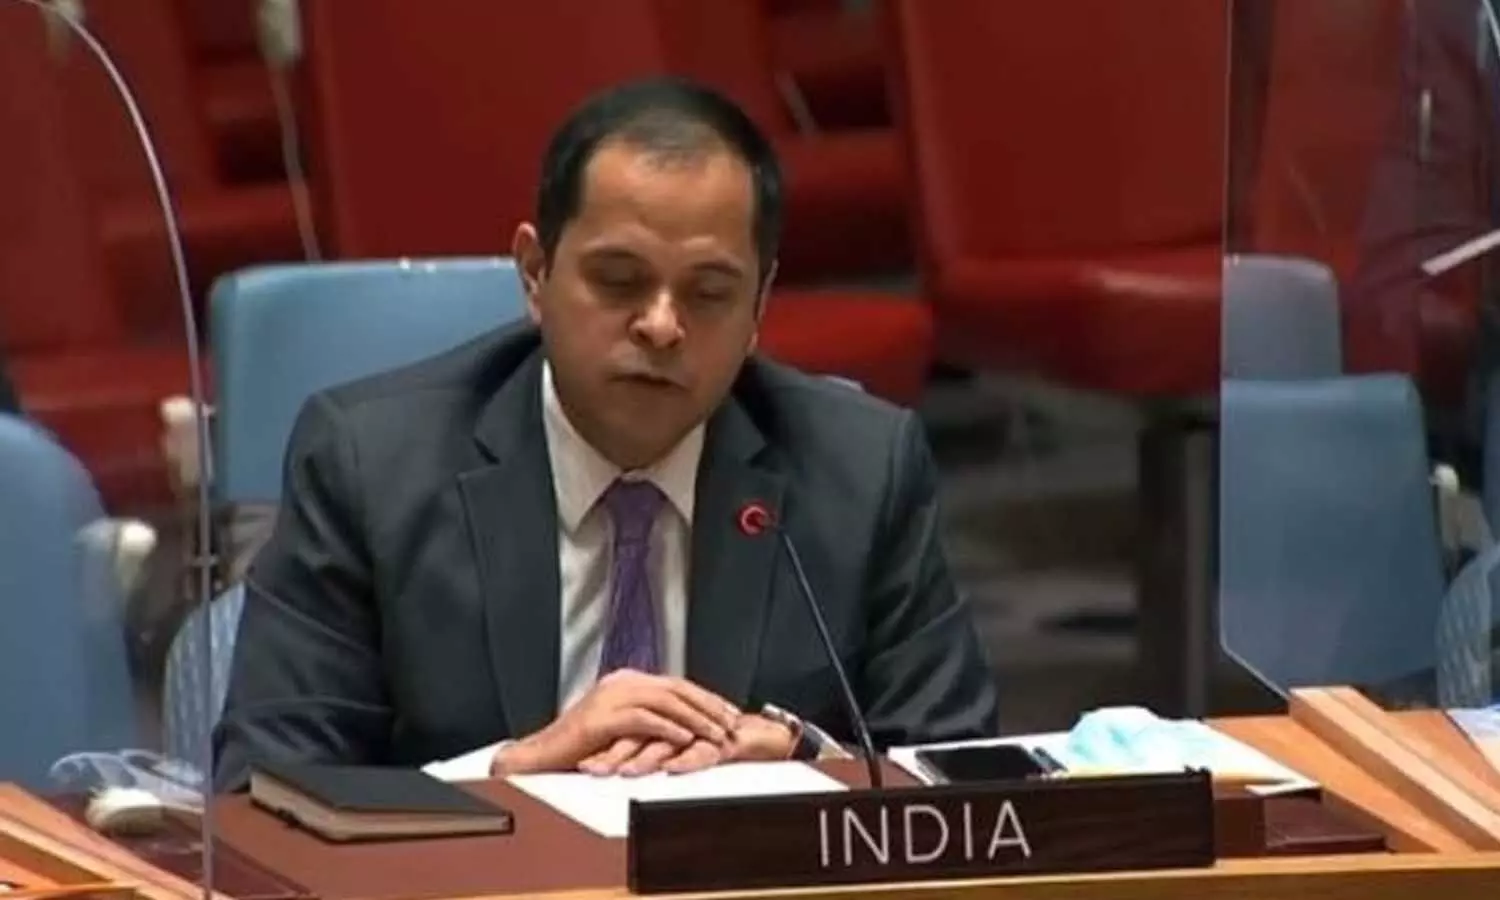 UNSC Meeting: दारफुर अपराधों पर विशेष न्यायालय सही कदम, सूडान संकट के समाधान पर भारत आगे बढ़ा